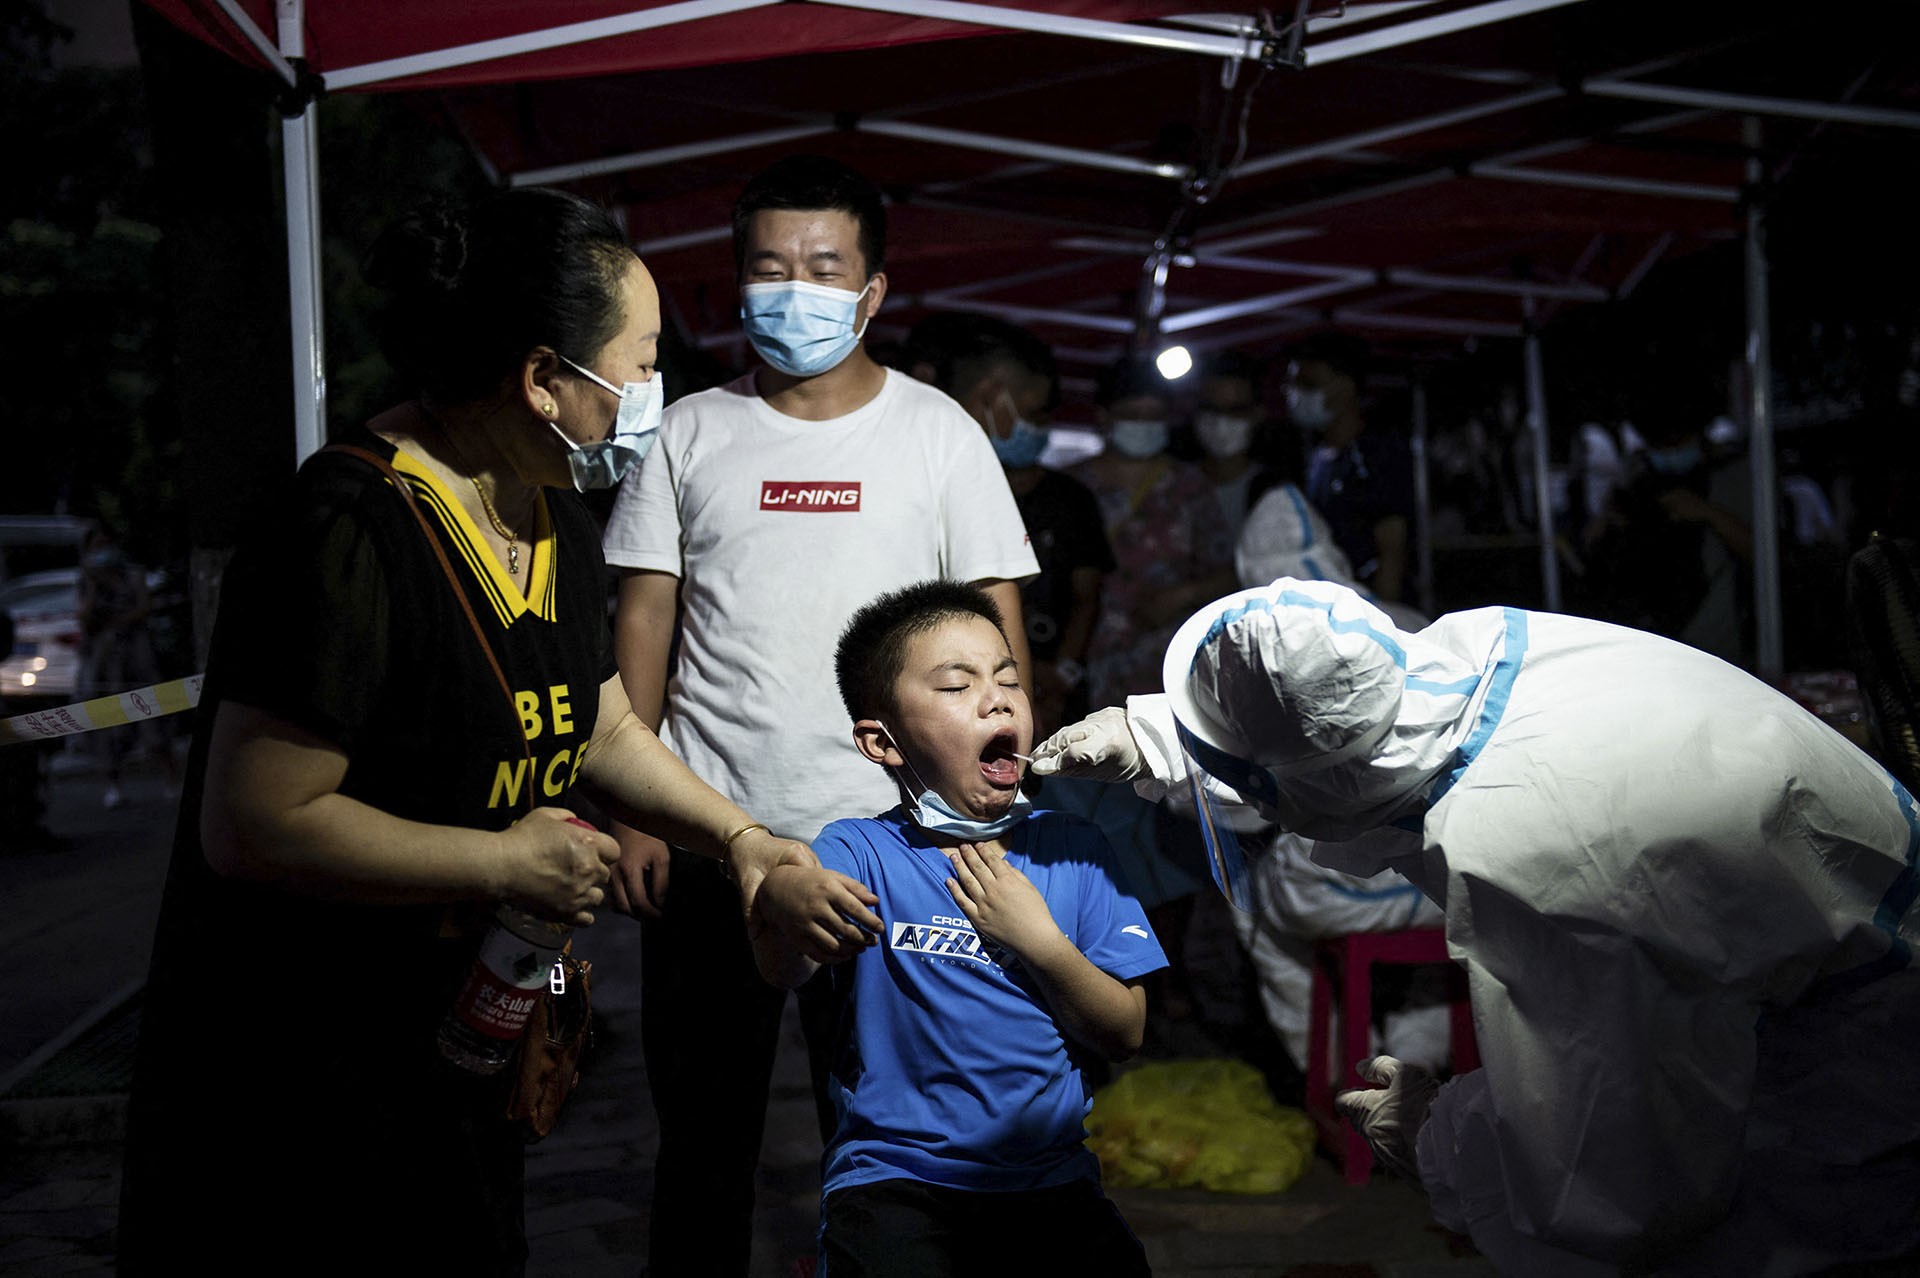 Új pandémia? – Gyerekek között terjed a tüdőgyulladás Kínában, a WHO máris bekérte az adatokat